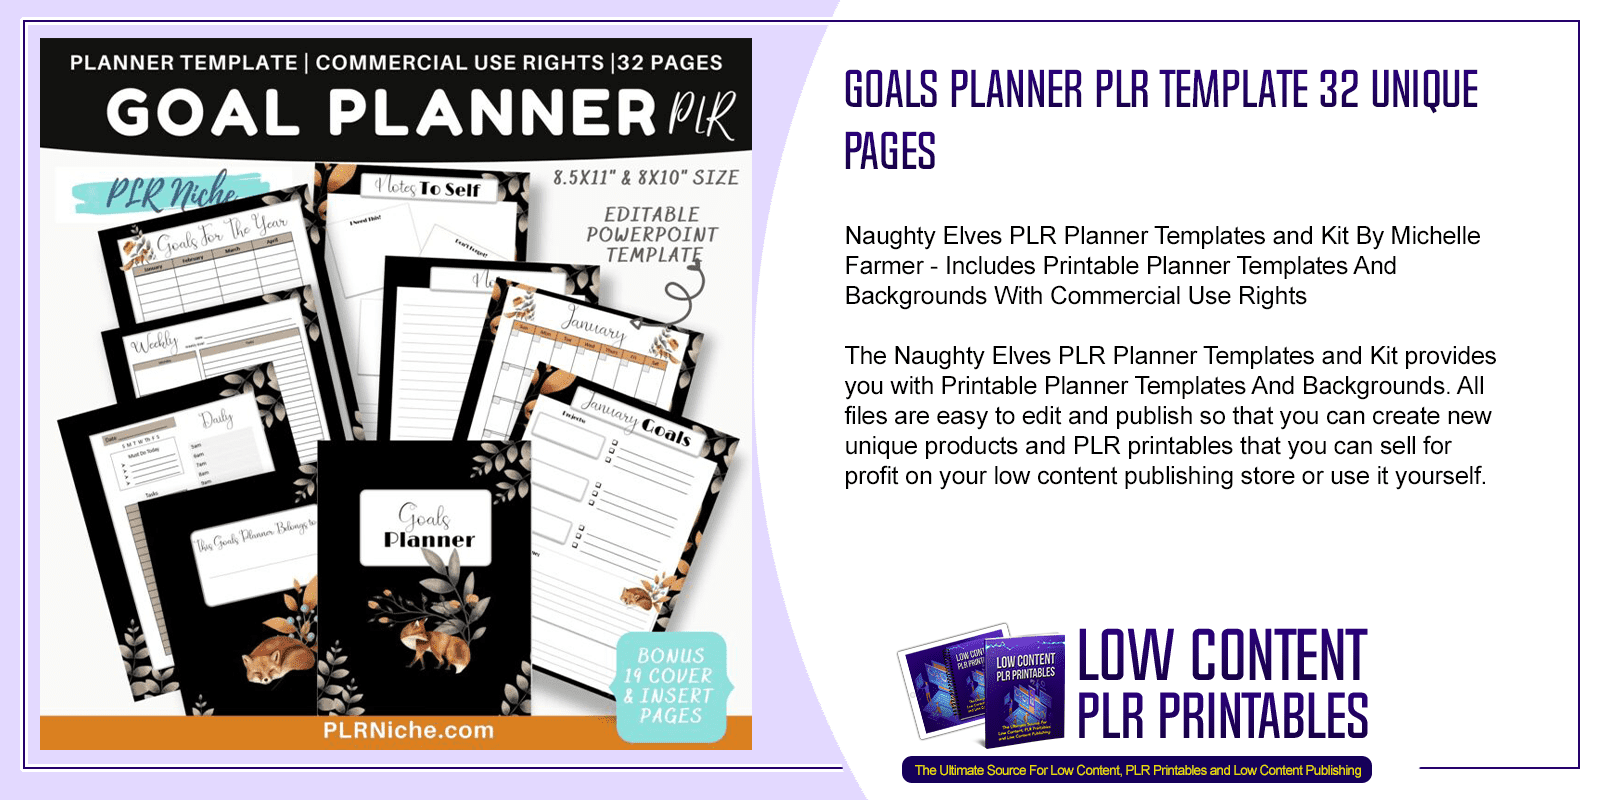 Goals Planner PLR Template 32 Unique Pages